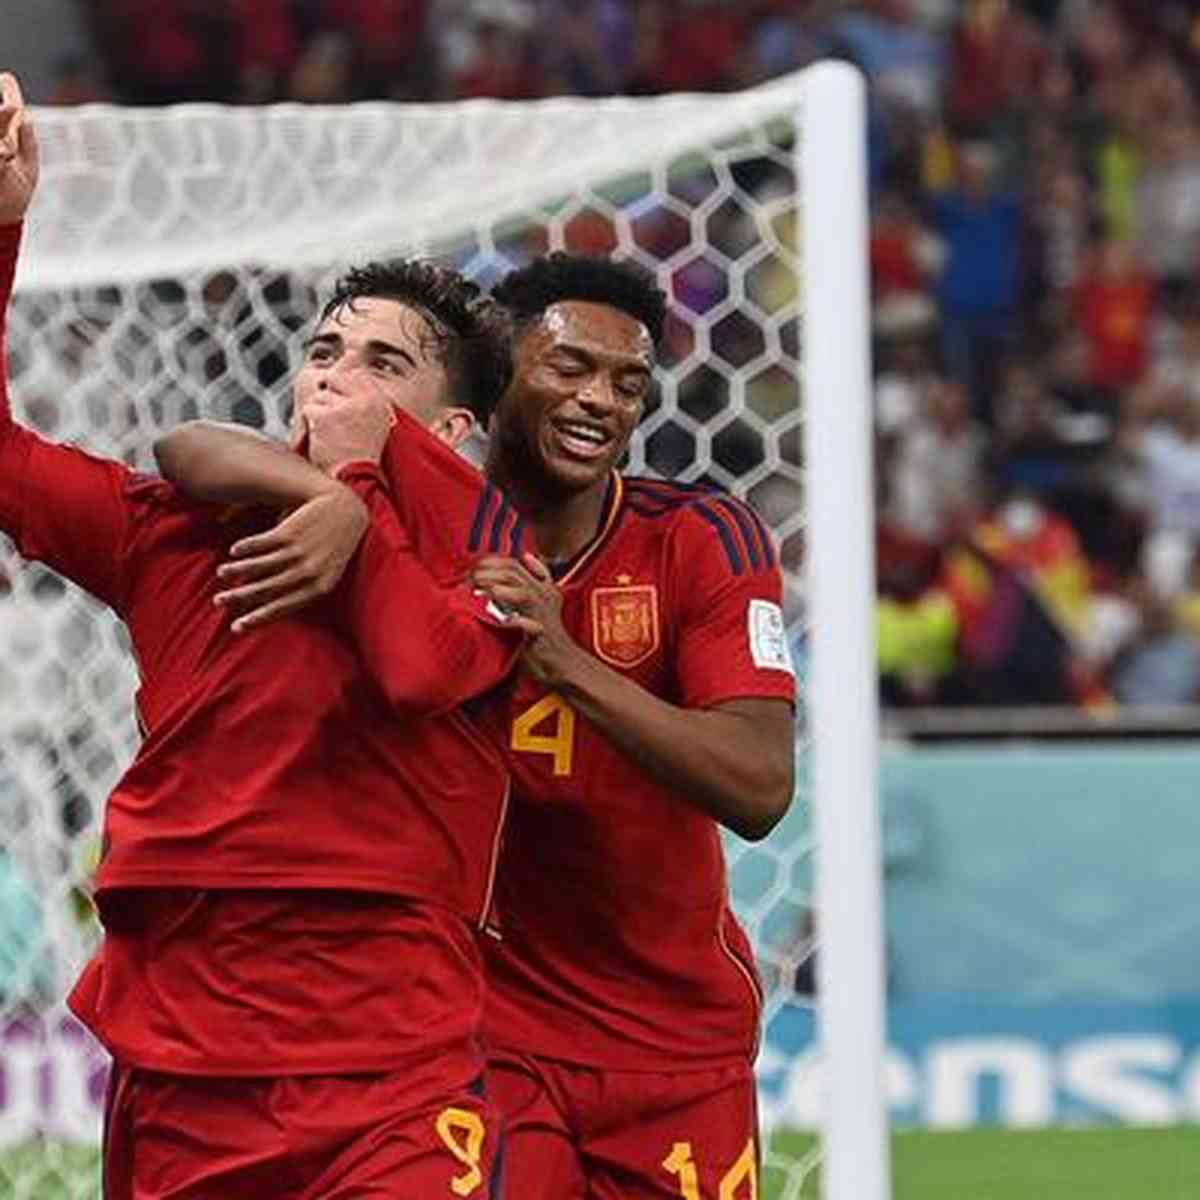 Espanha faz seu maior placar em Mundiais; veja as maiores goleadas